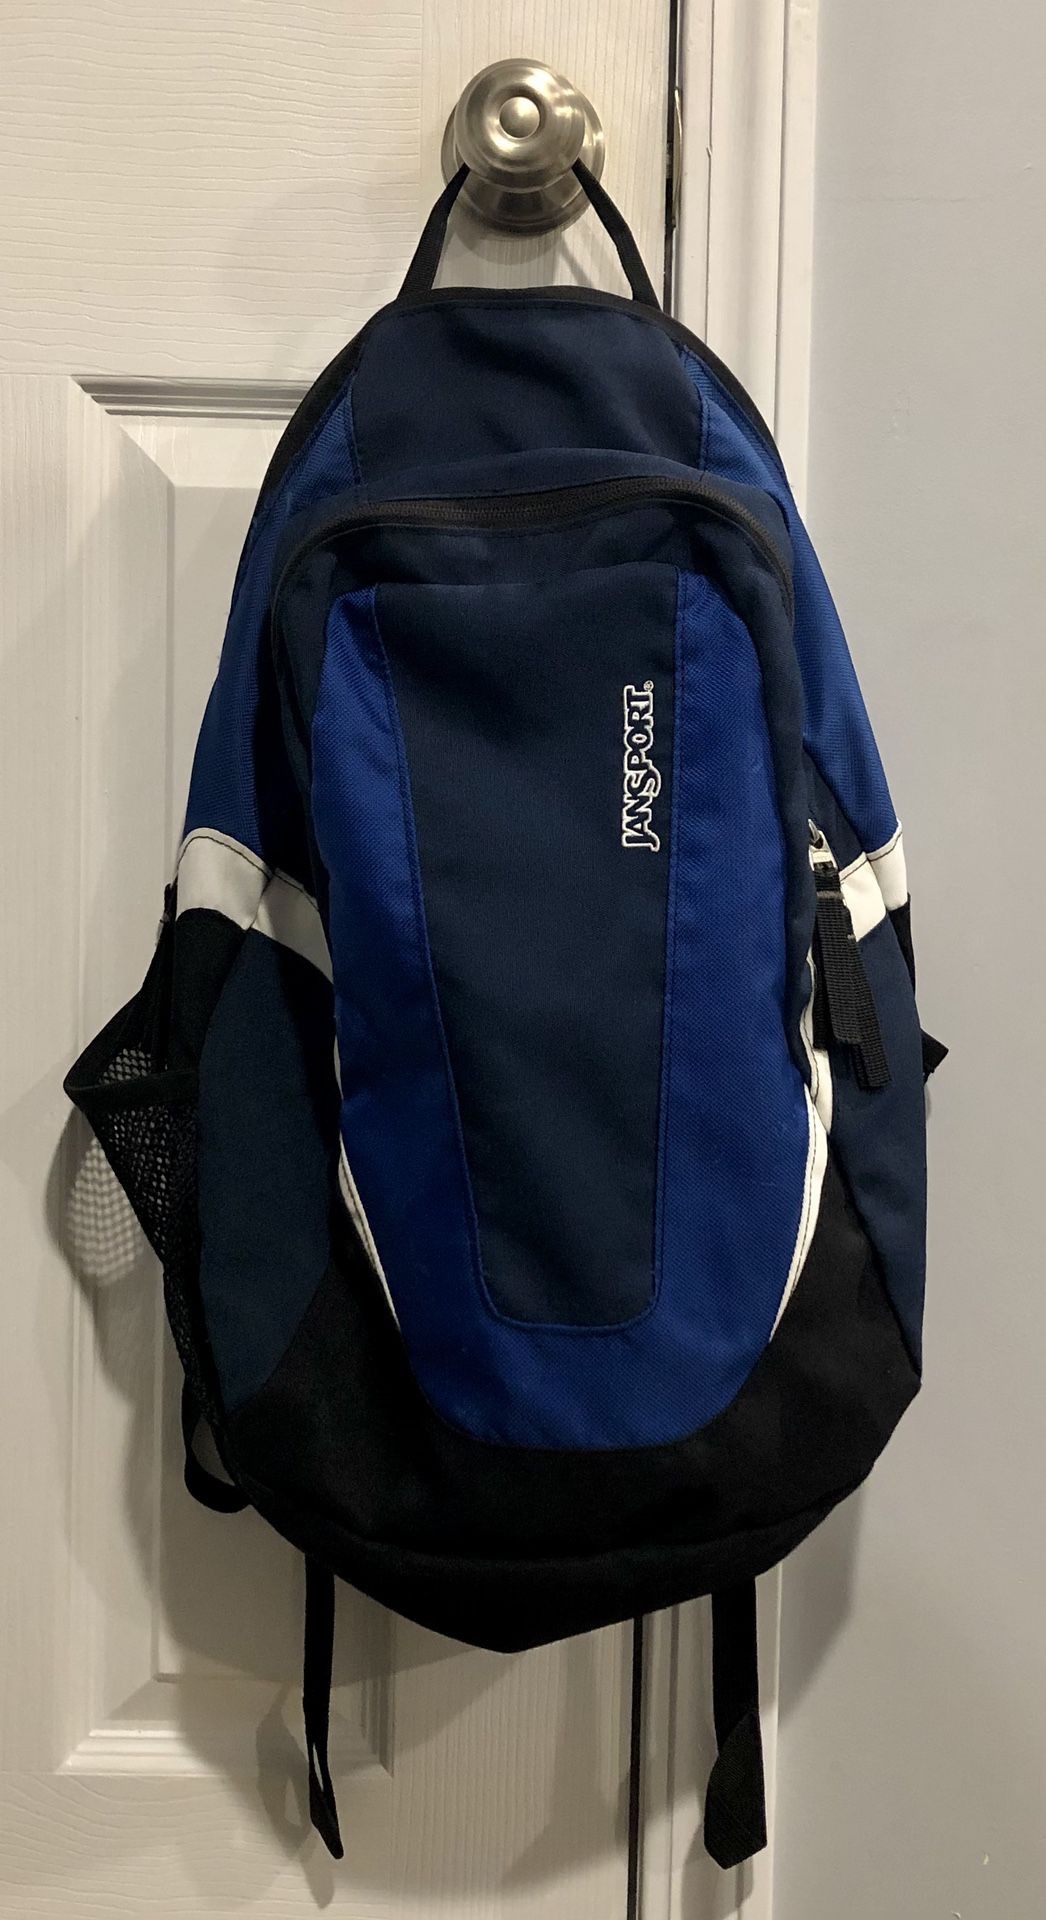 Jansport Lightweight Backpack - Blue / Black / White Design - Day Pack Hiking Bag